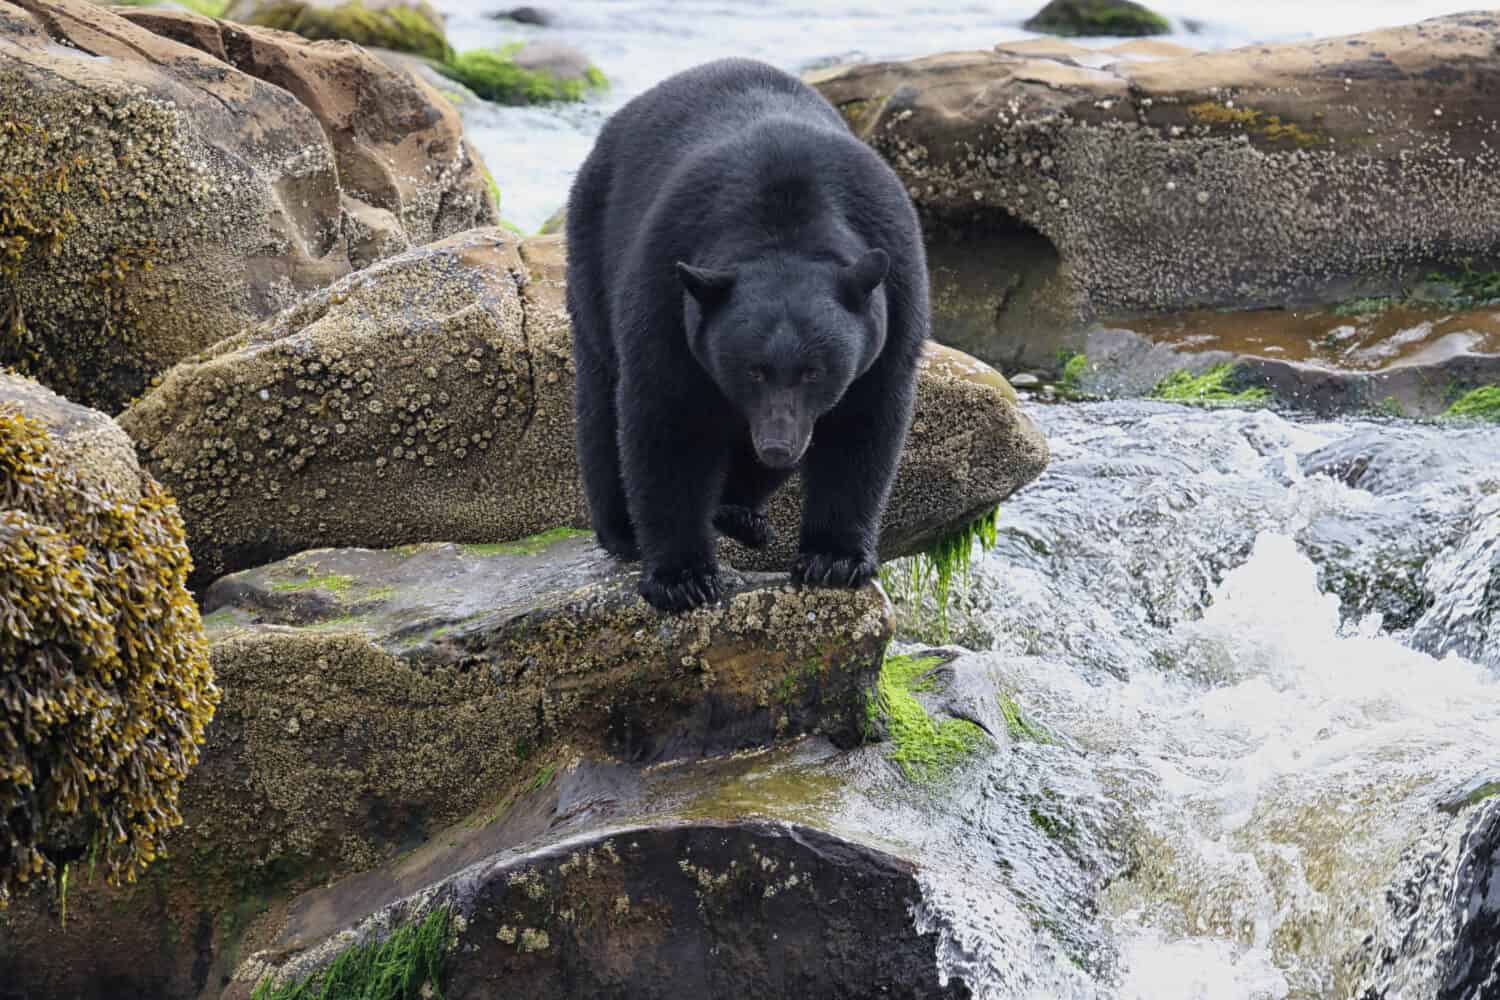 Wild Black Bear (Ursus americanus) dalla pesca fluviale.  Isola di Vancouver, Columbia Britannica, Canada.